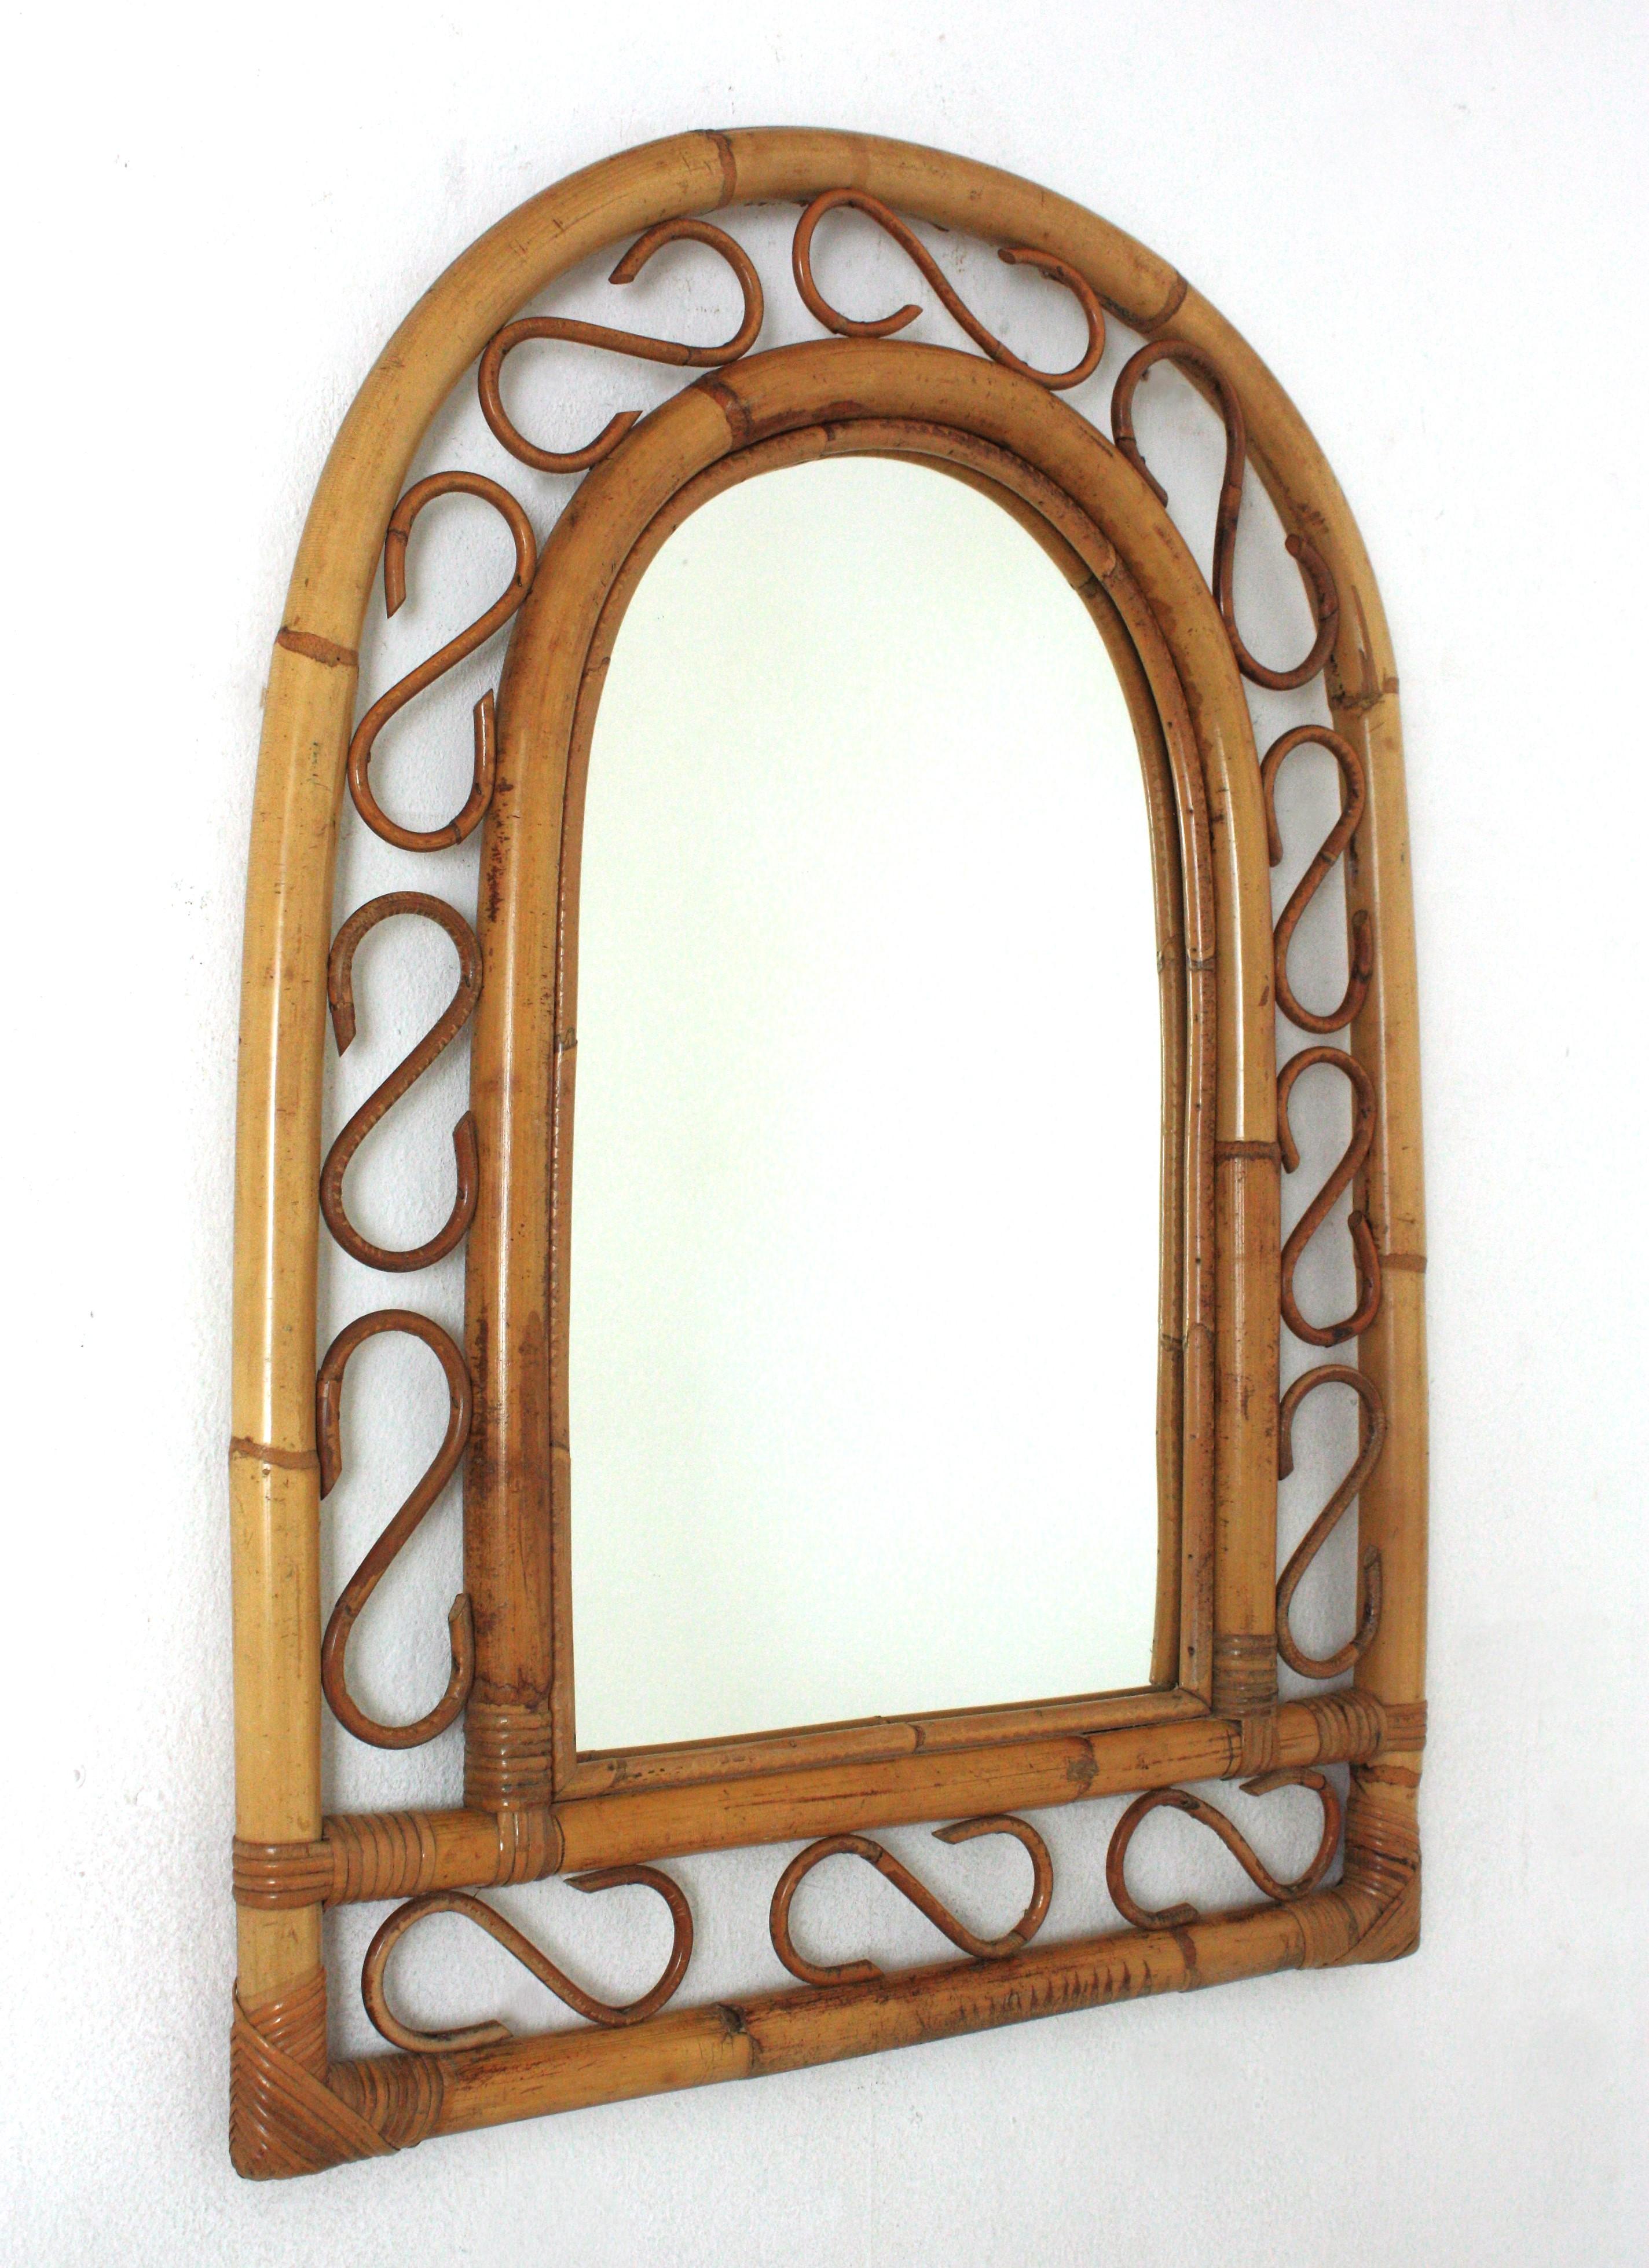 Auffälliger, handgefertigter Spiegel aus Bambus und Rattan im Stil des Mid-Century Modern Franco Albini mit gewölbtem Oberteil.
Dieser Spiegel hat einen doppelten Bambusrahmen mit dekorativen Details aus Rattan zwischen den Bambusrohren.
Dieser